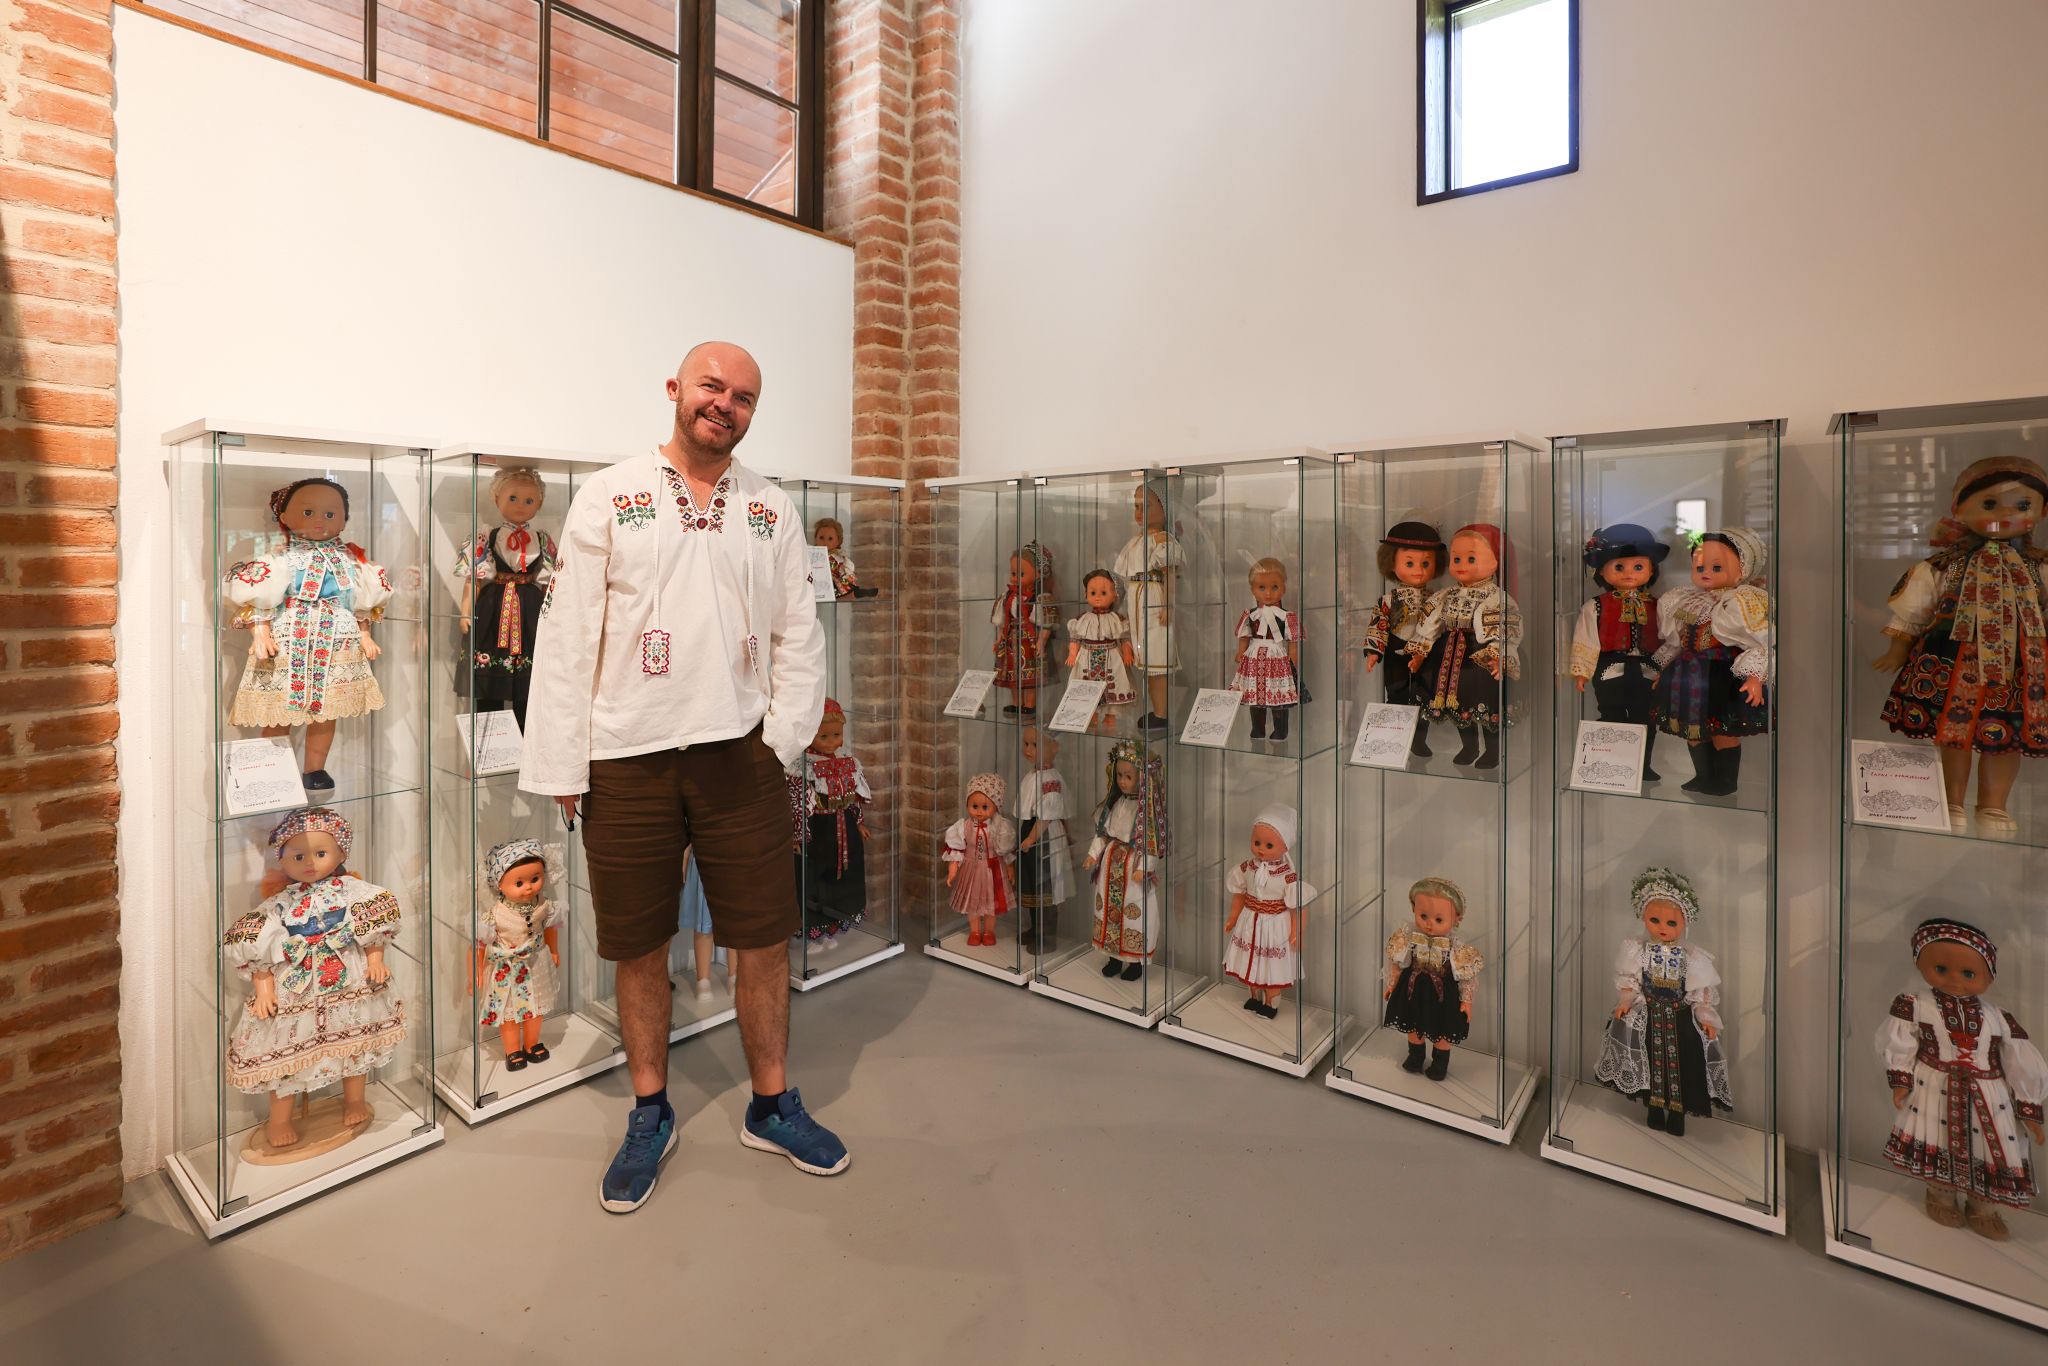 Marekove bábiky - expozícia krojovaných bábik, Cerová Autor: Vladimír Miček